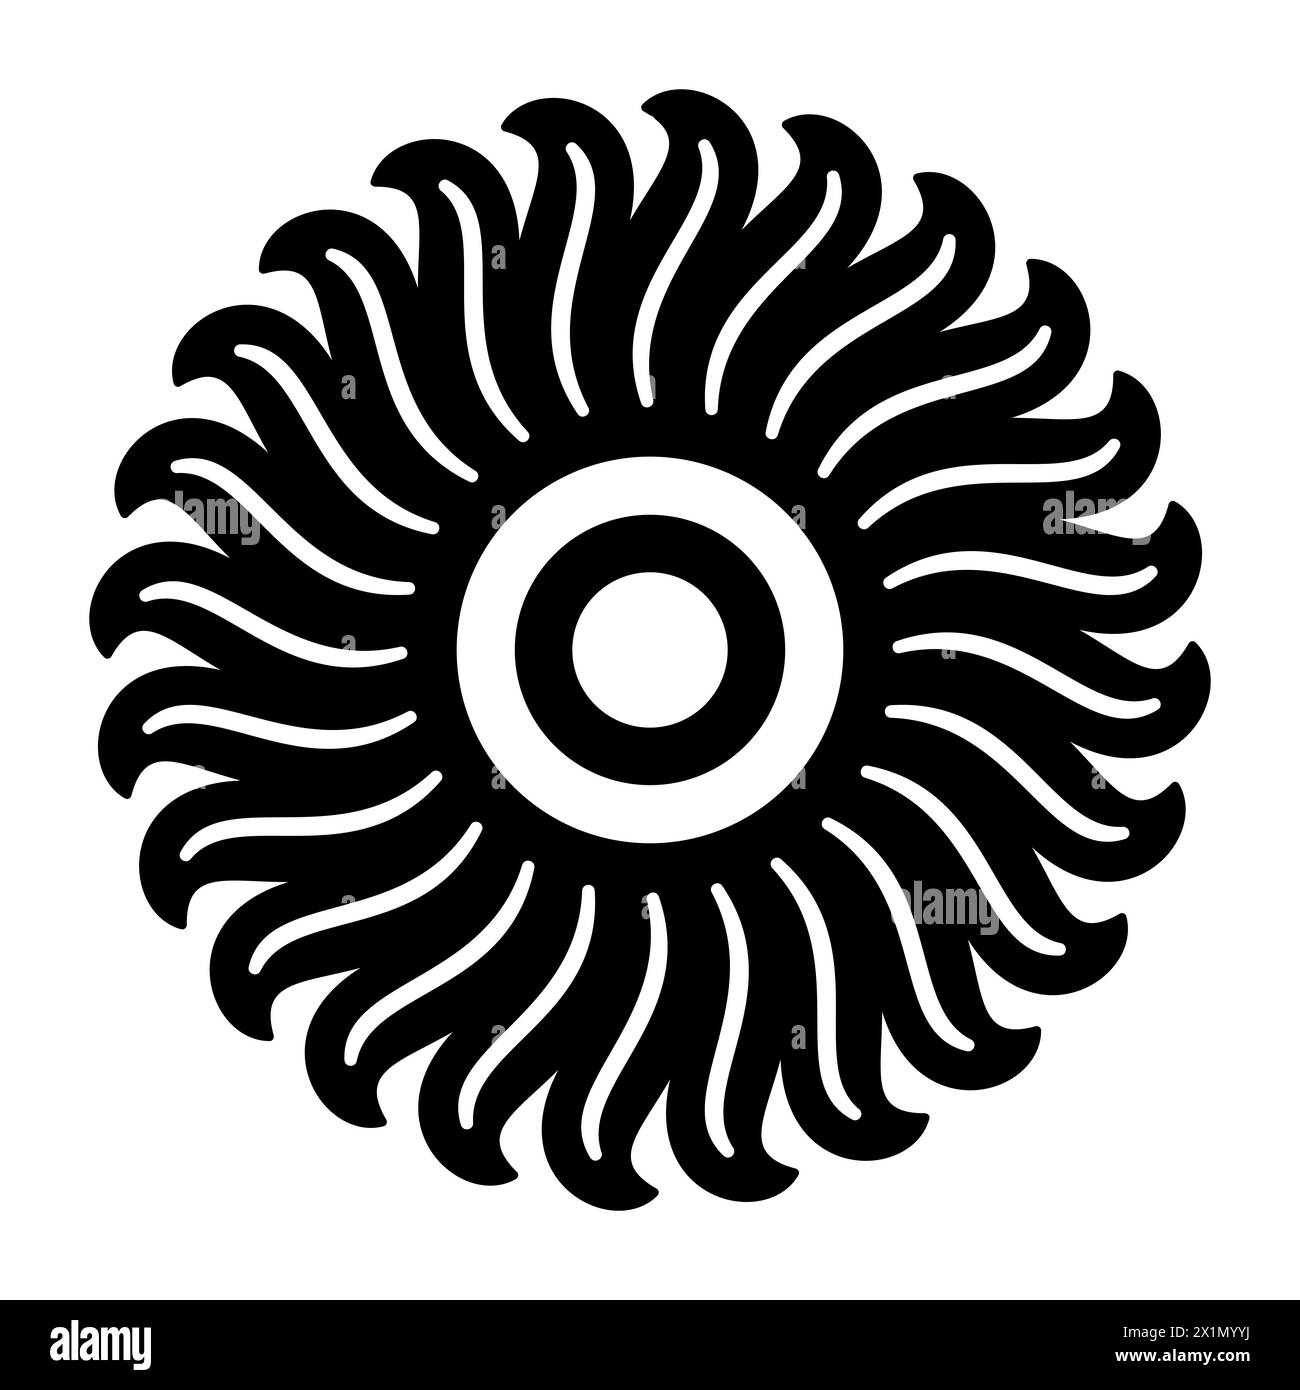 Motivo floreale e simbolo del sole. Segno solare, un cerchio circondato da ventiquattro fiamme o raggi di luce. O anche un fiore con petali. Bianco e nero. Foto Stock